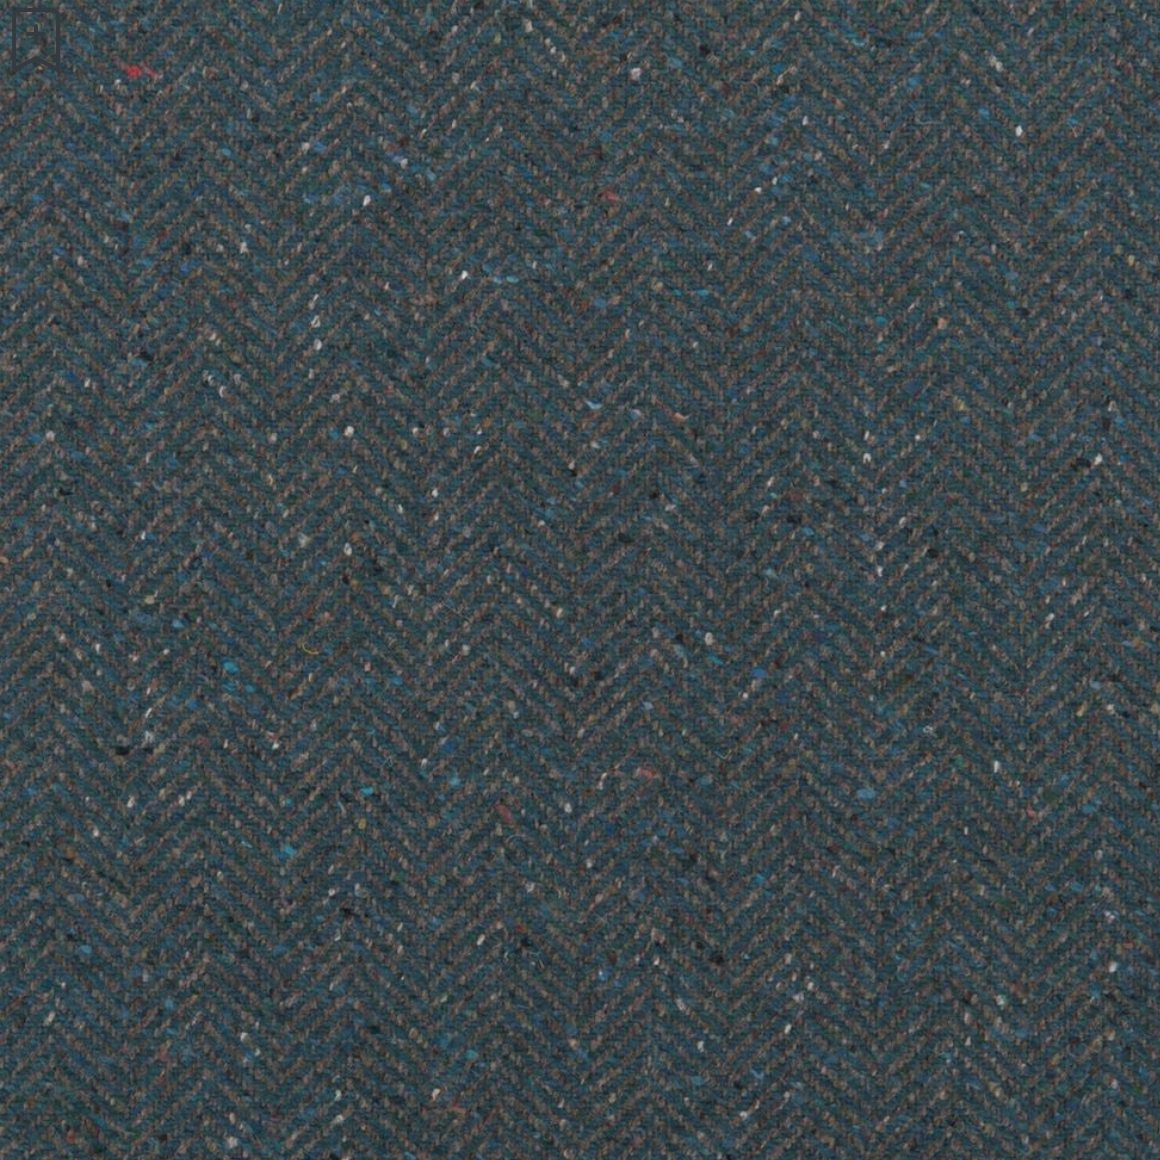 Stoneleigh Herringbone Woodland Fabric